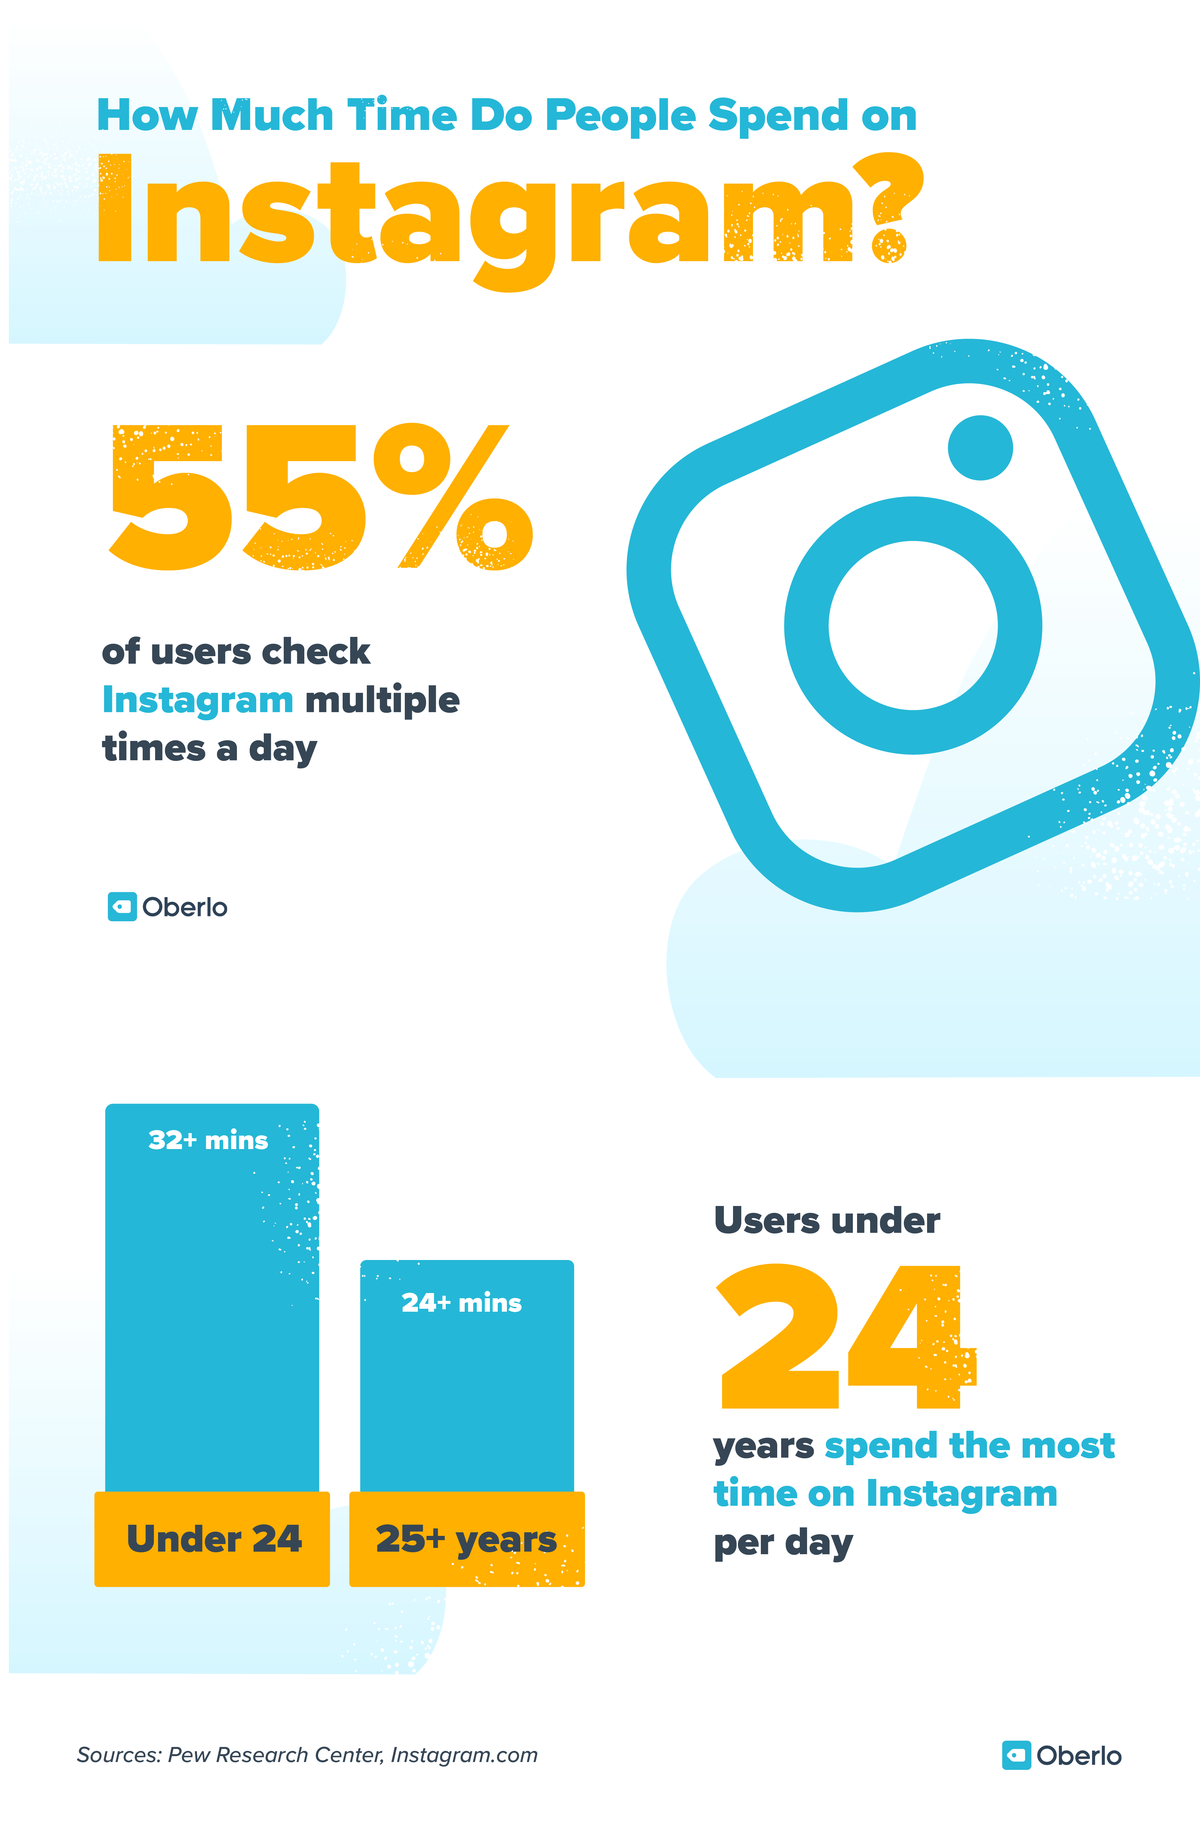 Estadísticas de marketing en redes sociales: el 55% de los usuarios de Instagram lo revisan varias veces al día. Los usuarios menores de 24 años pasan la mayor parte del tiempo en Instagram por día (más de 32 minutos)